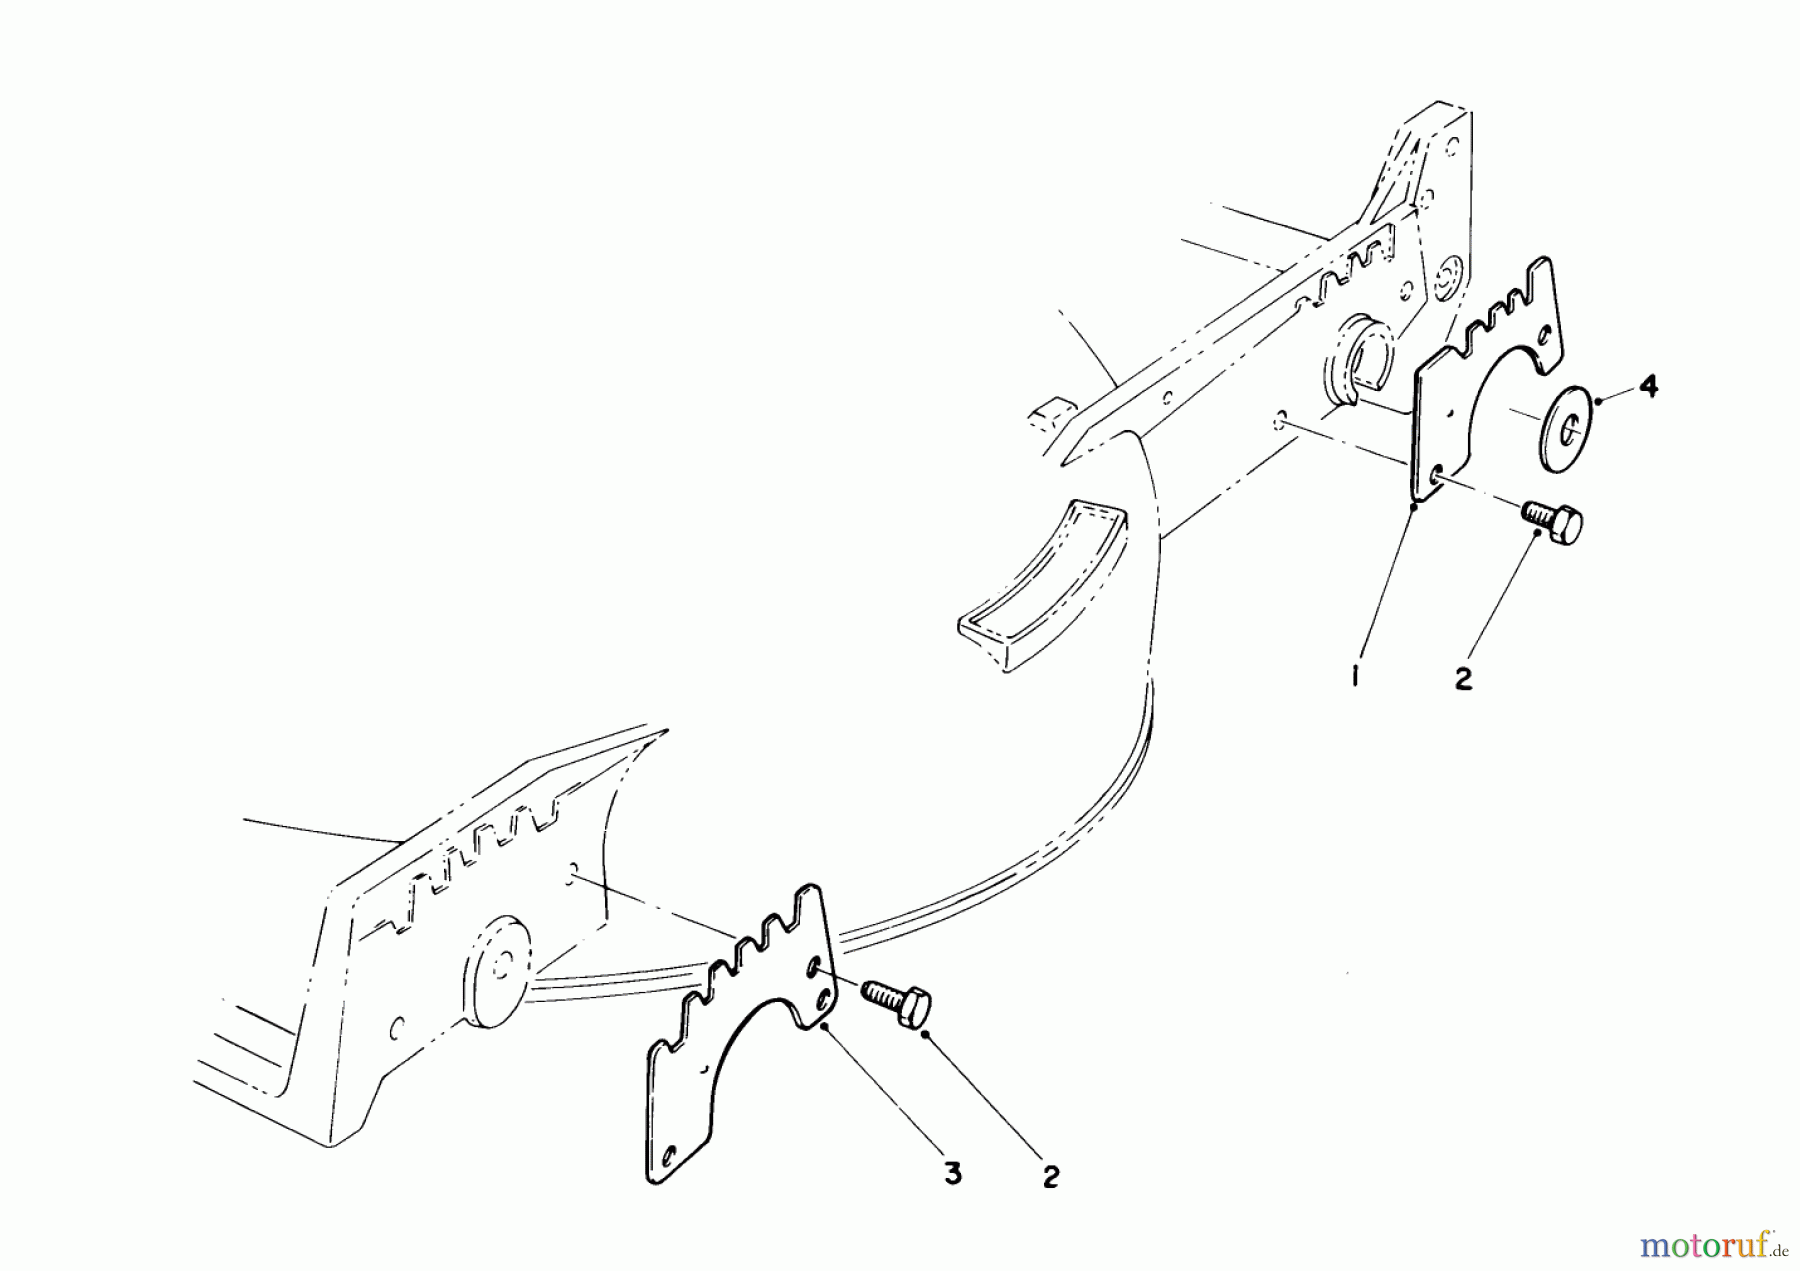  Toro Neu Mowers, Walk-Behind Seite 1 20581 - Toro Lawnmower, 1987 (7000001-7999999) WEAR PLATE KIT NO. 49-4080 (OPTIONAL)